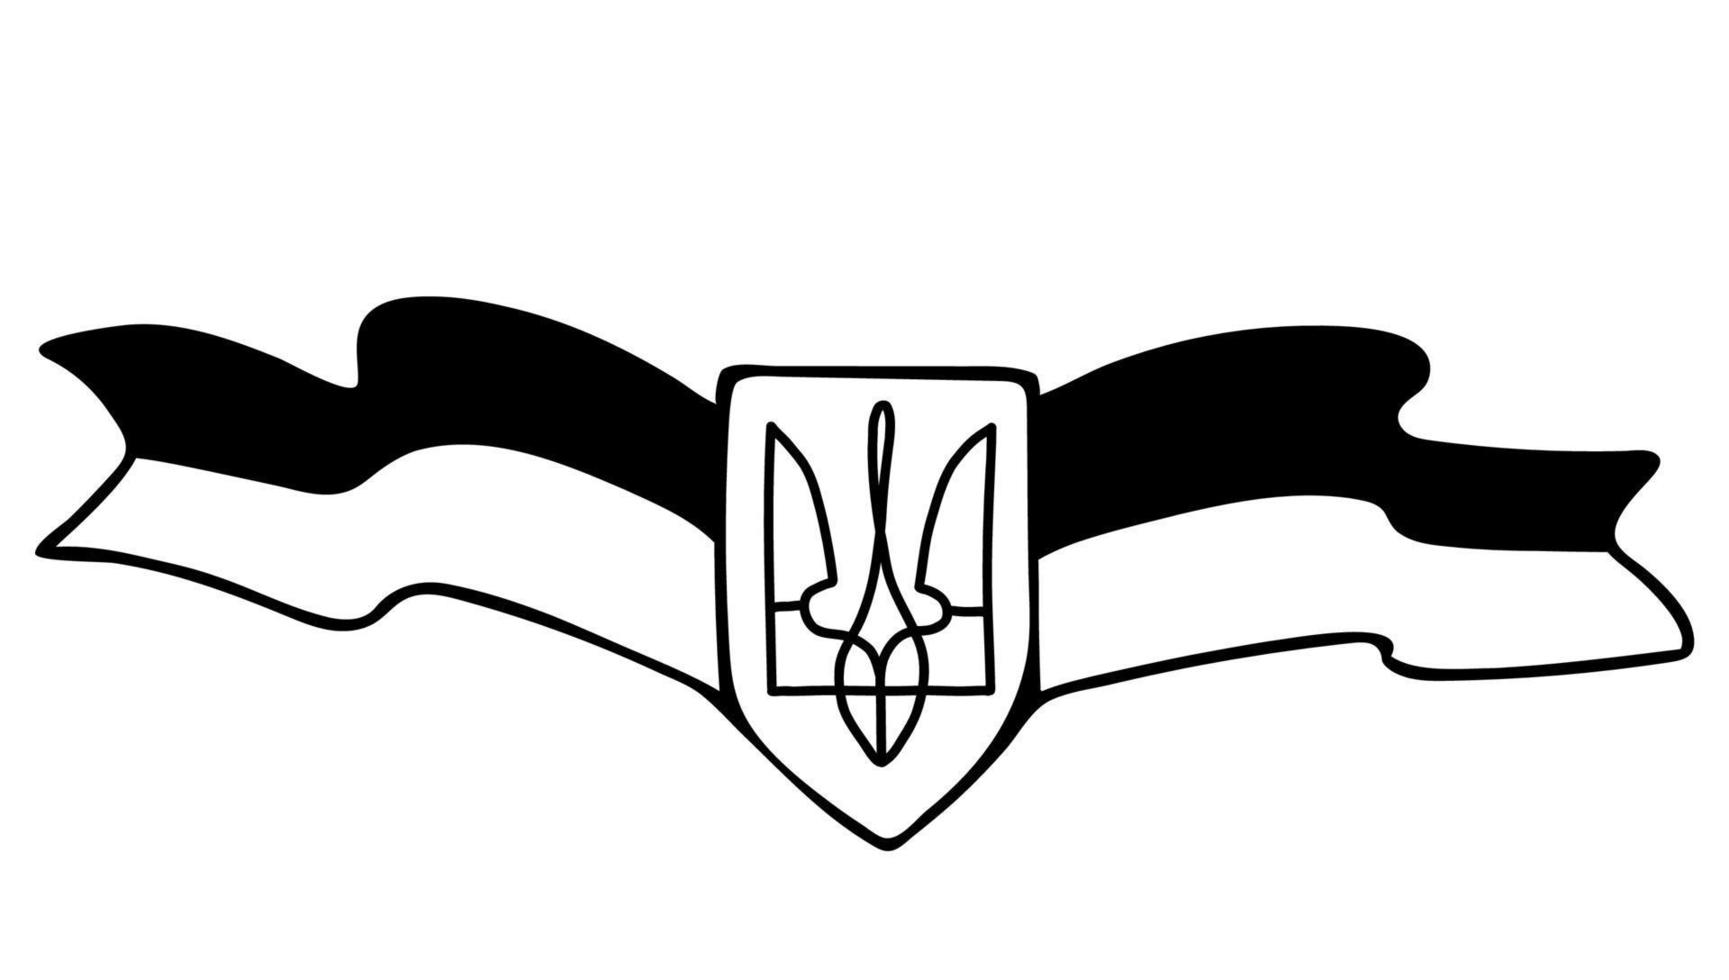 ukrainsk symbol. landsvapen är treudd och flagga. vektor illustration. handritad linjär doodle. för design och dekoration av ukrainska teman